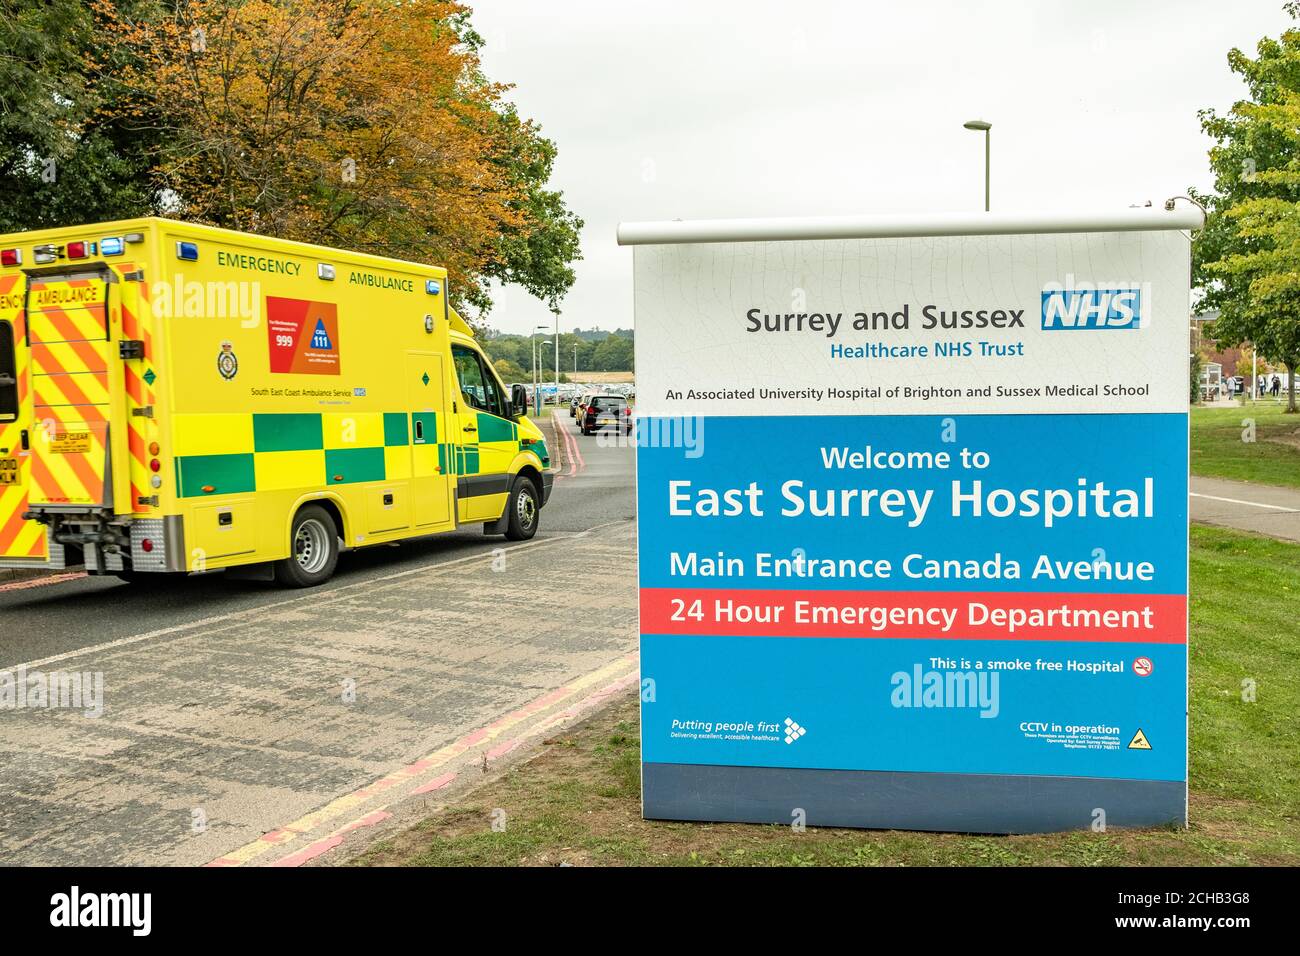 East Surrey Hospital, NHS Hospital à Surrey, dans le sud-est de l'Angleterre Banque D'Images